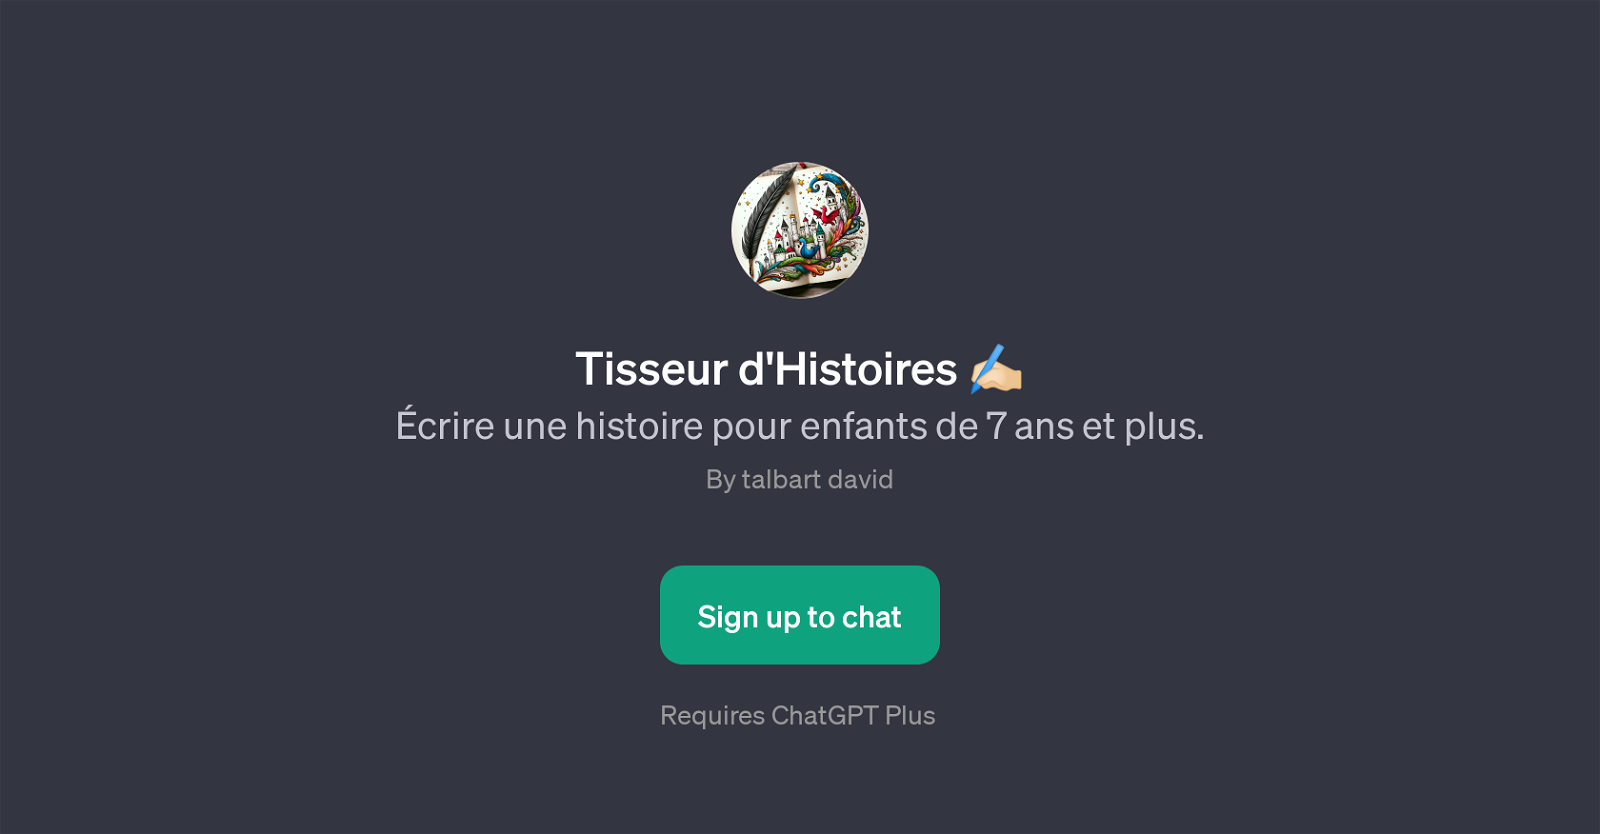 Tisseur d'Histoires website